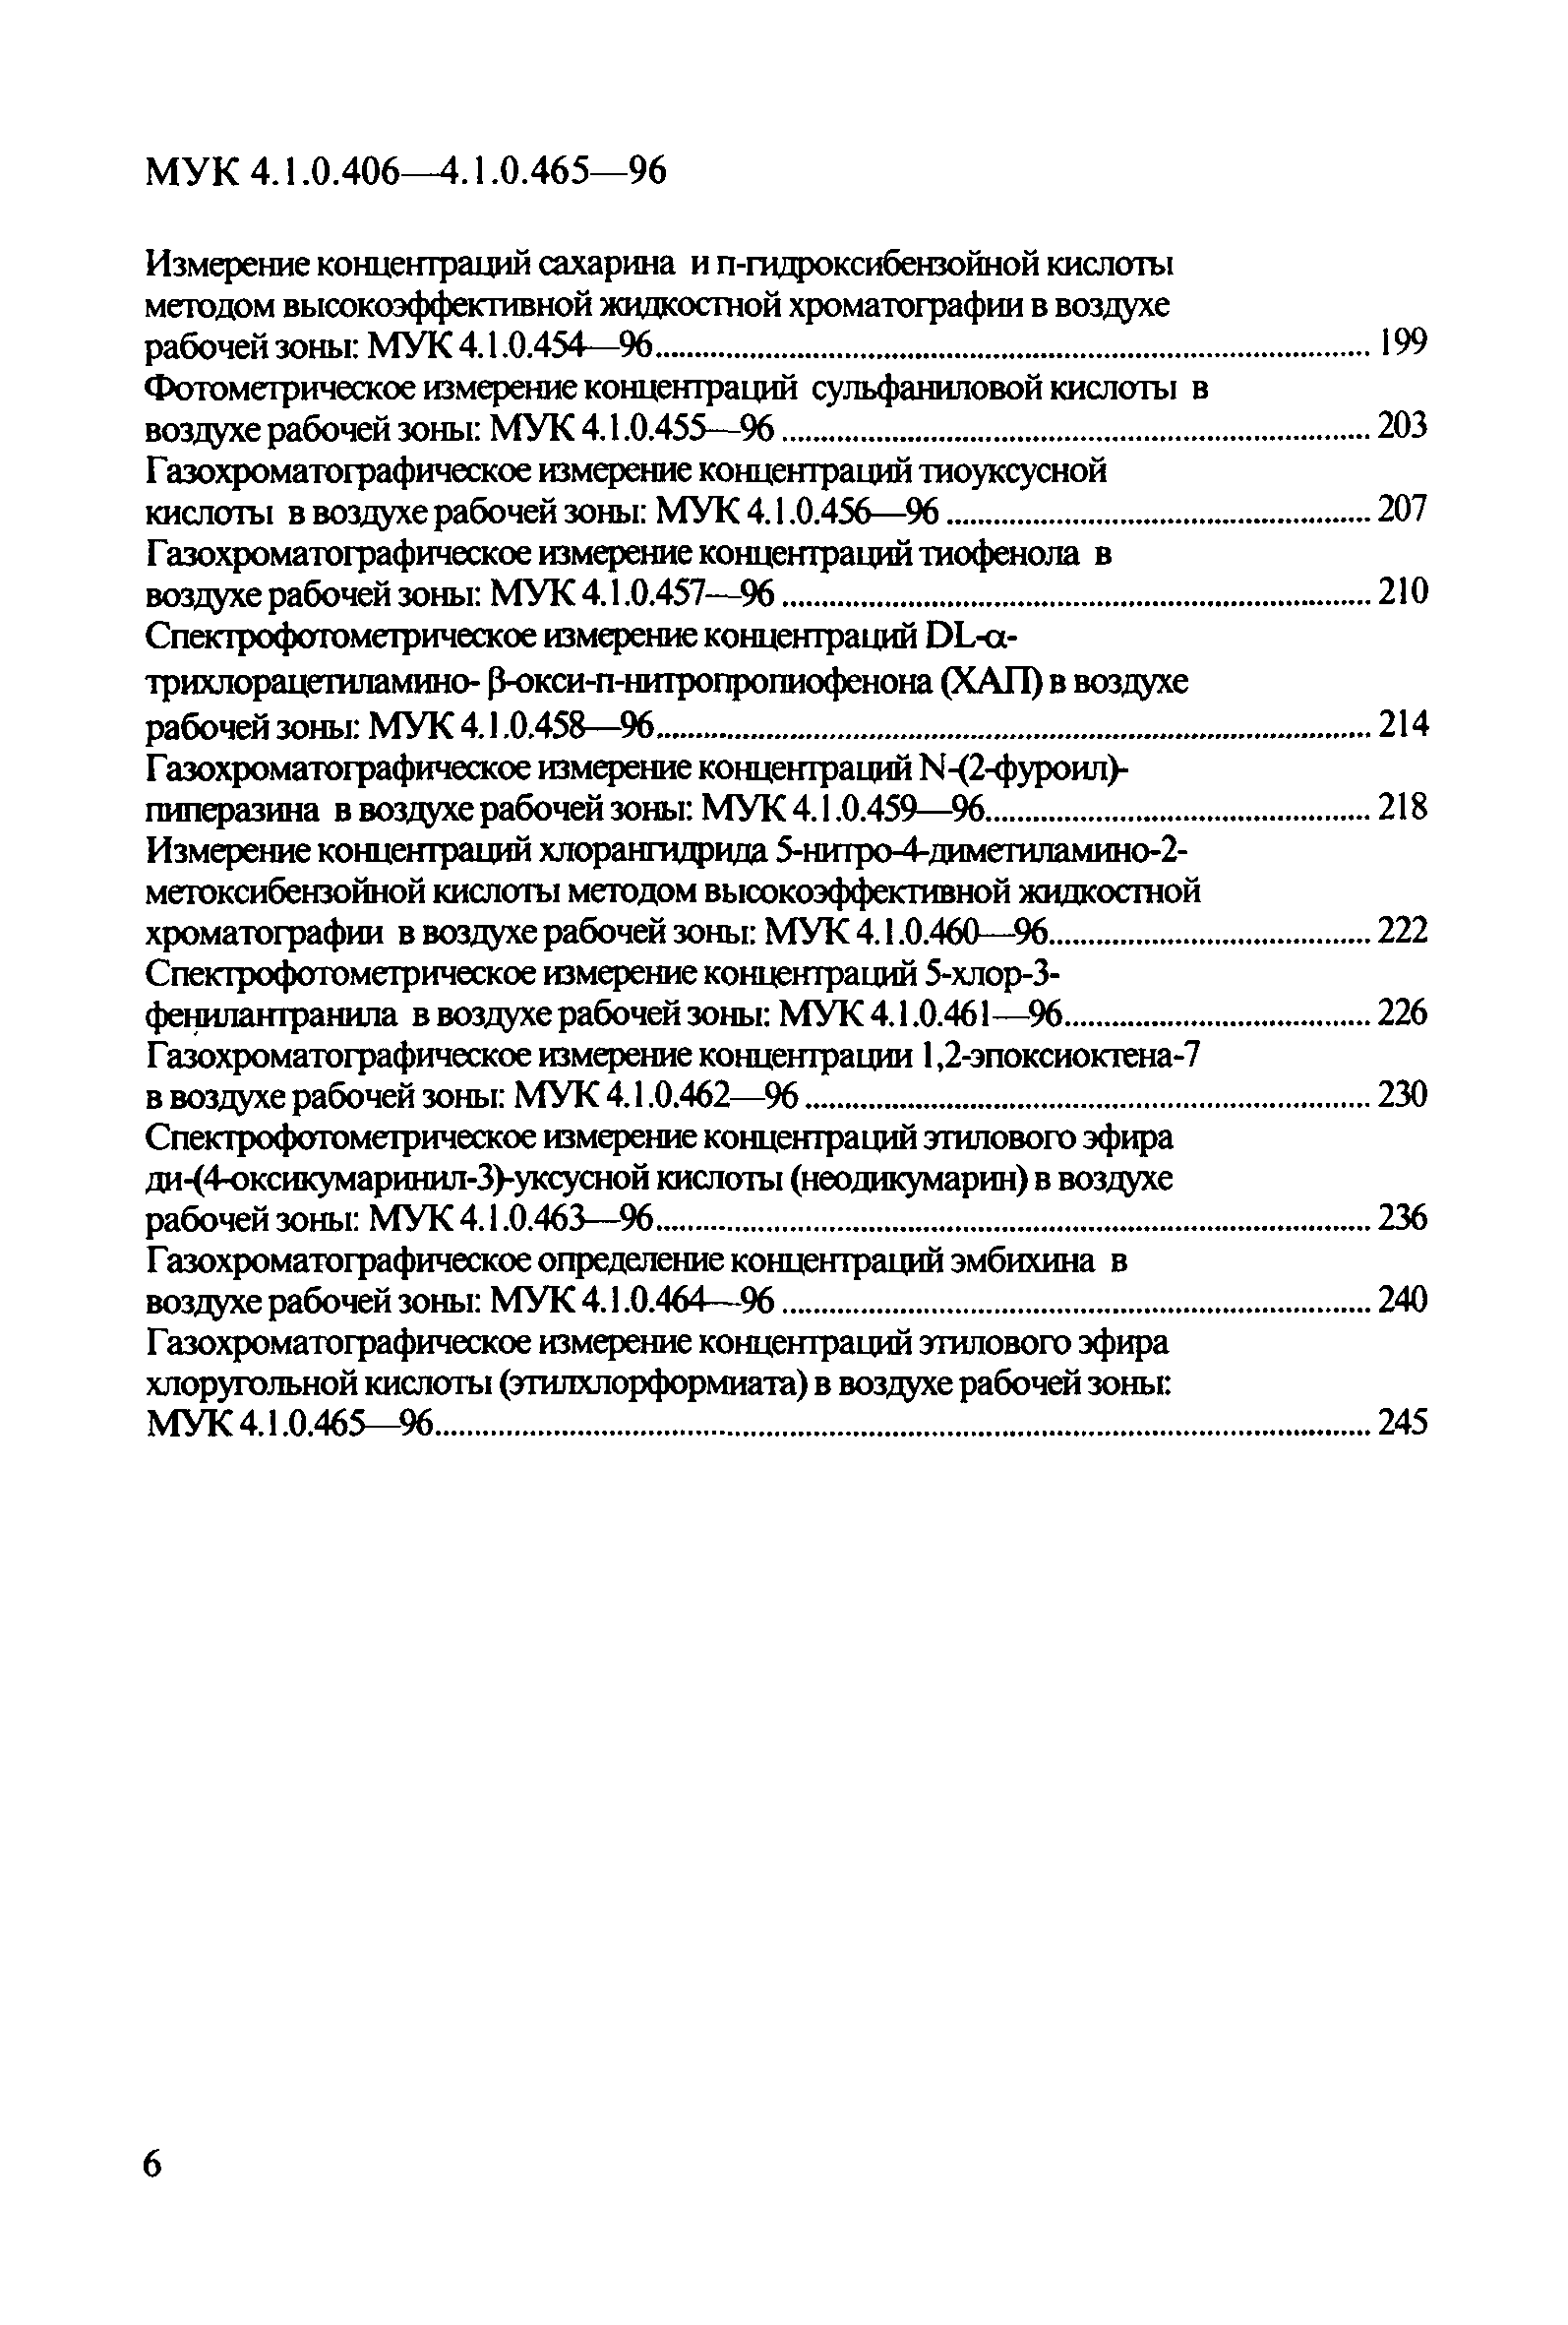 МУК 4.1.0.465-96